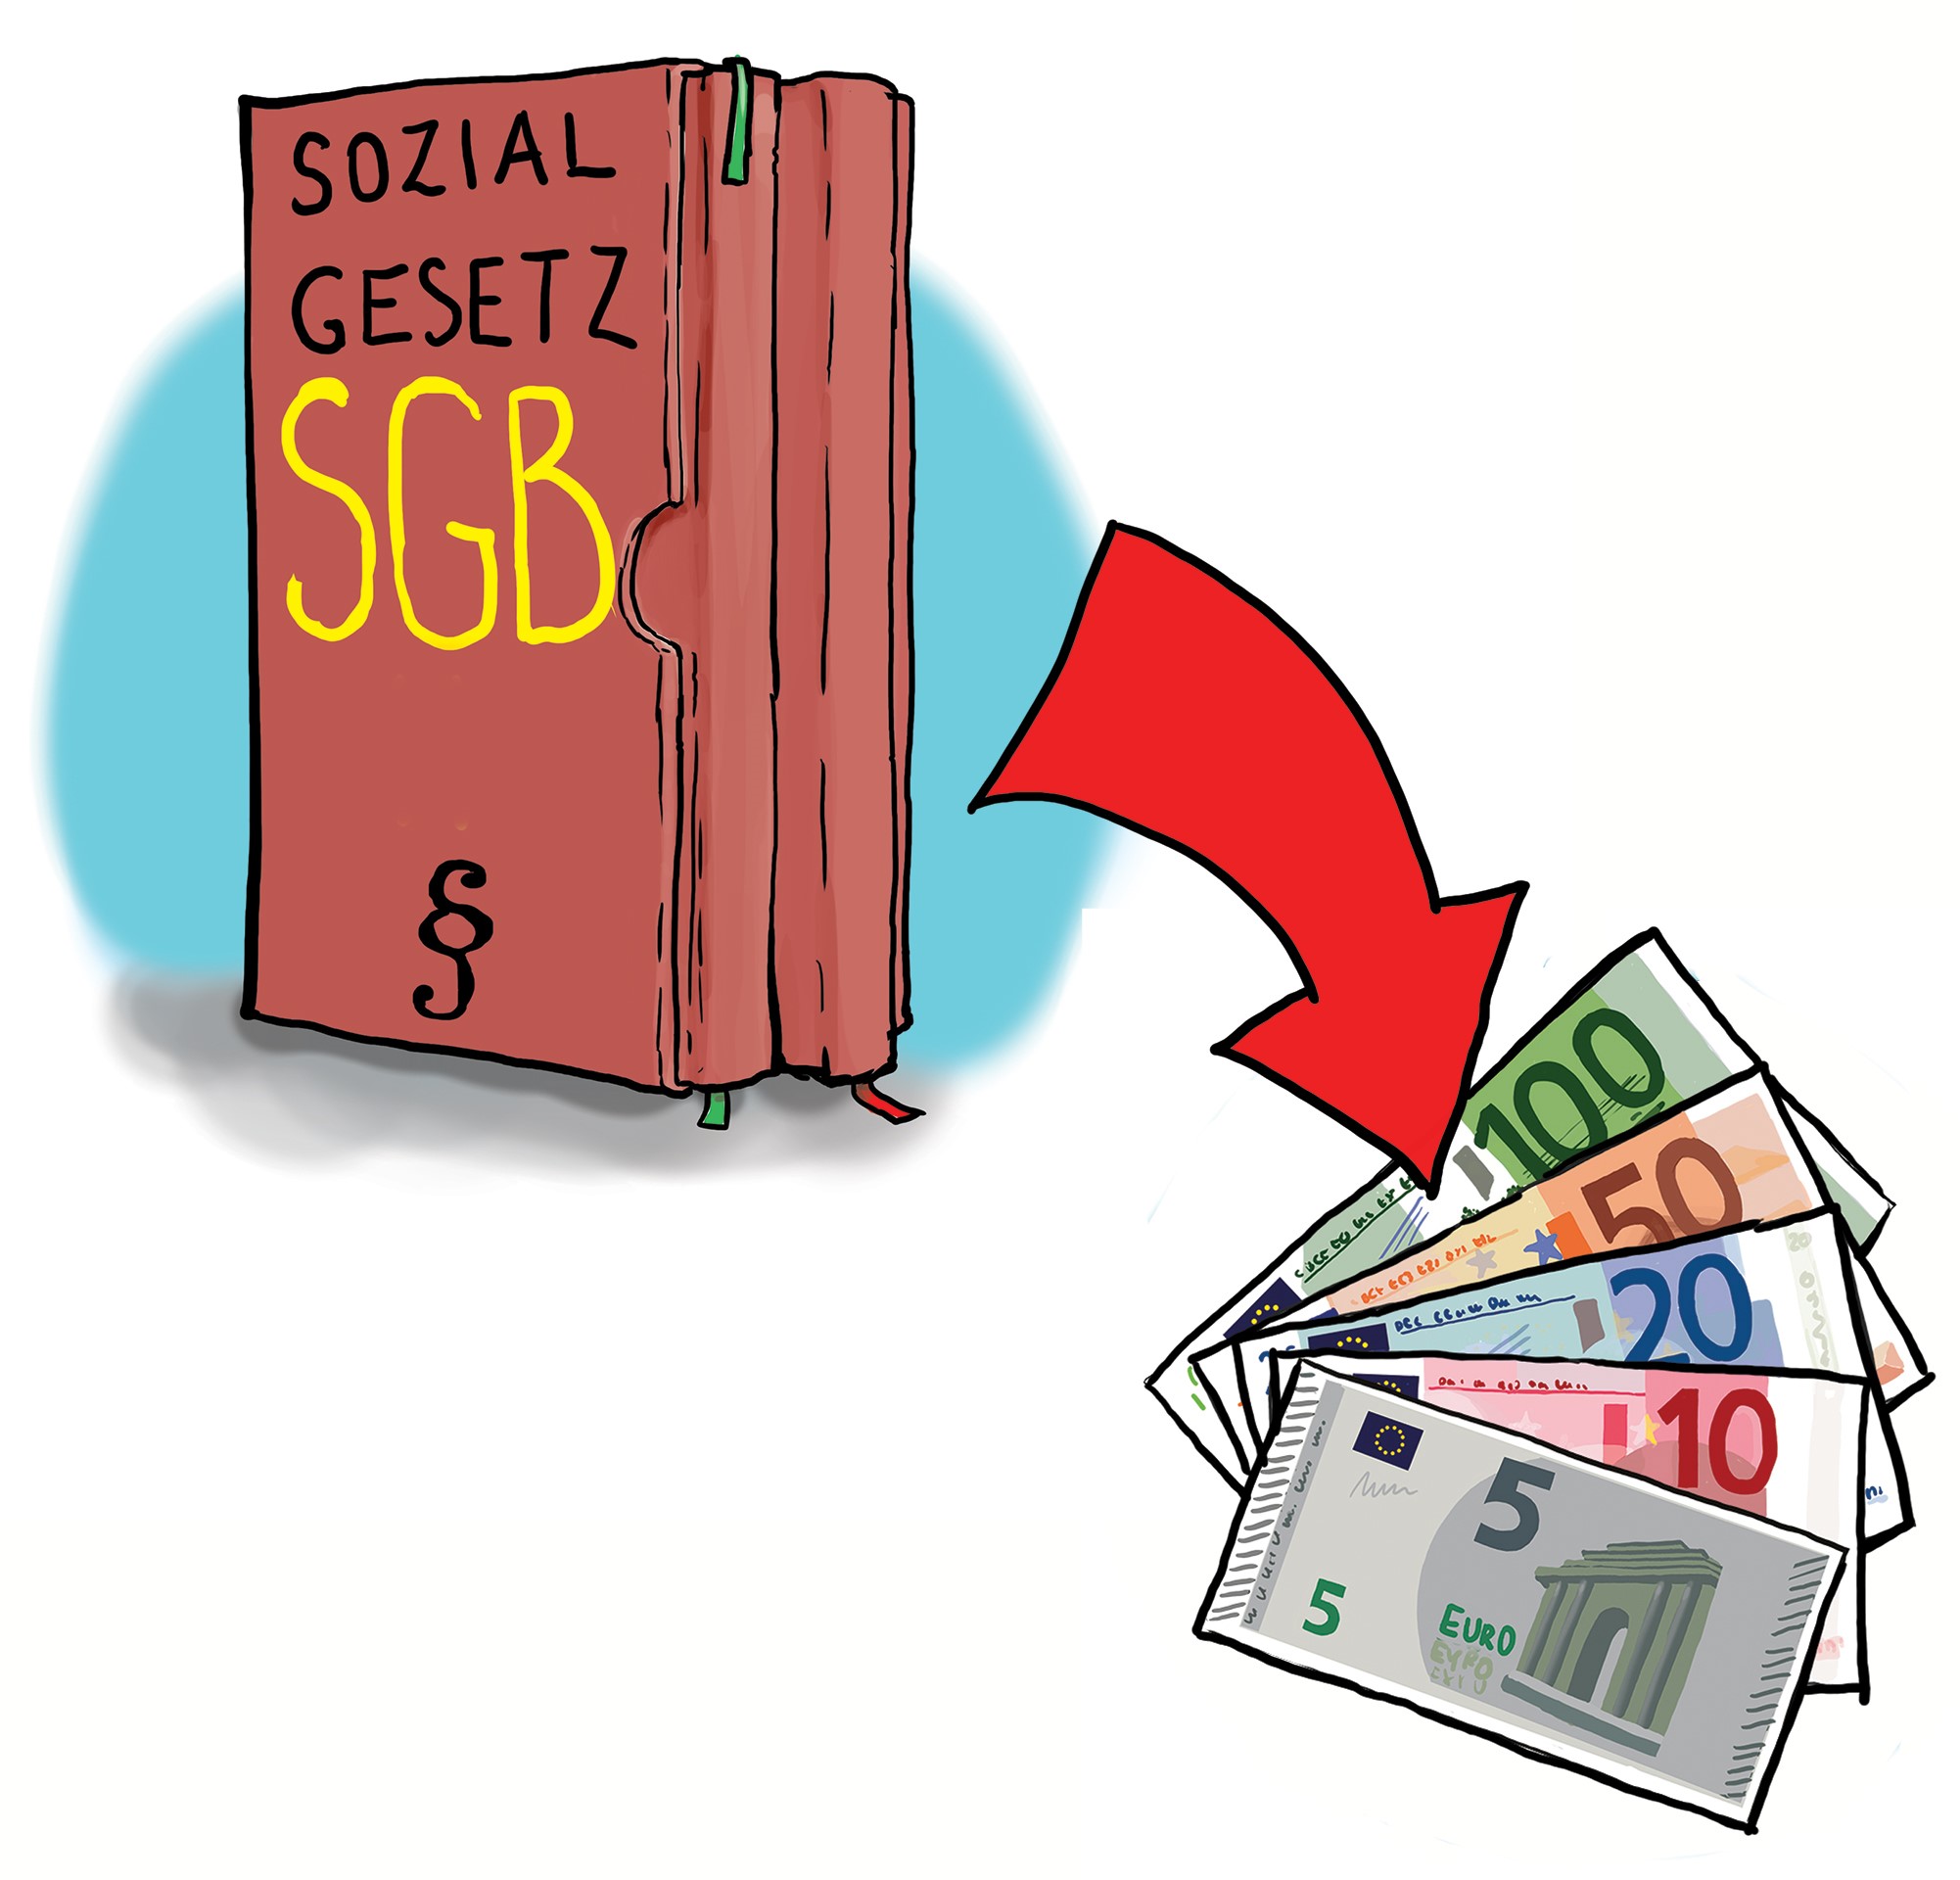 Abbildung des Sozialgesetzbuches (SGB). Von dem Bücherband zeigt ein dicker roter Pfeil zu fünf Euroscheinen (100-, 50-, 20-, 10- und 5-Euro)